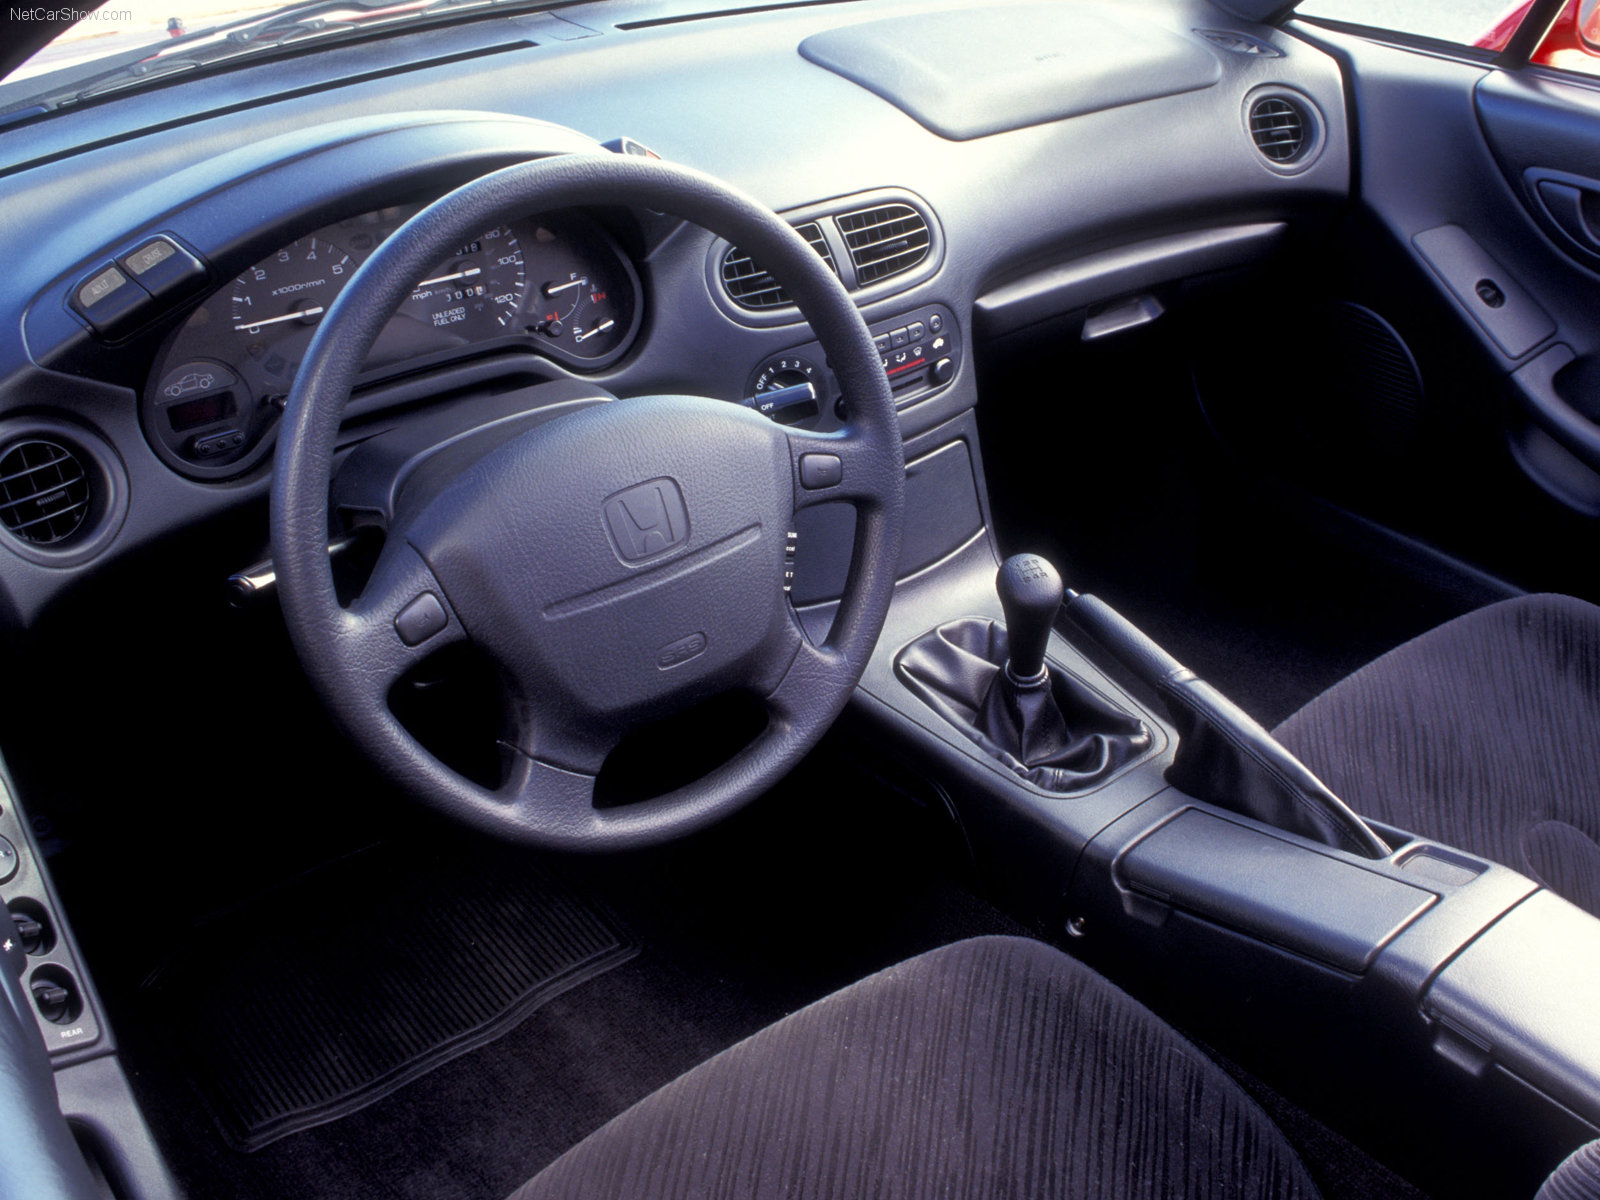 Honda Civic CR-X  Del Sol 1993 Honda-Civic_Del_Sol-1993-1600-06